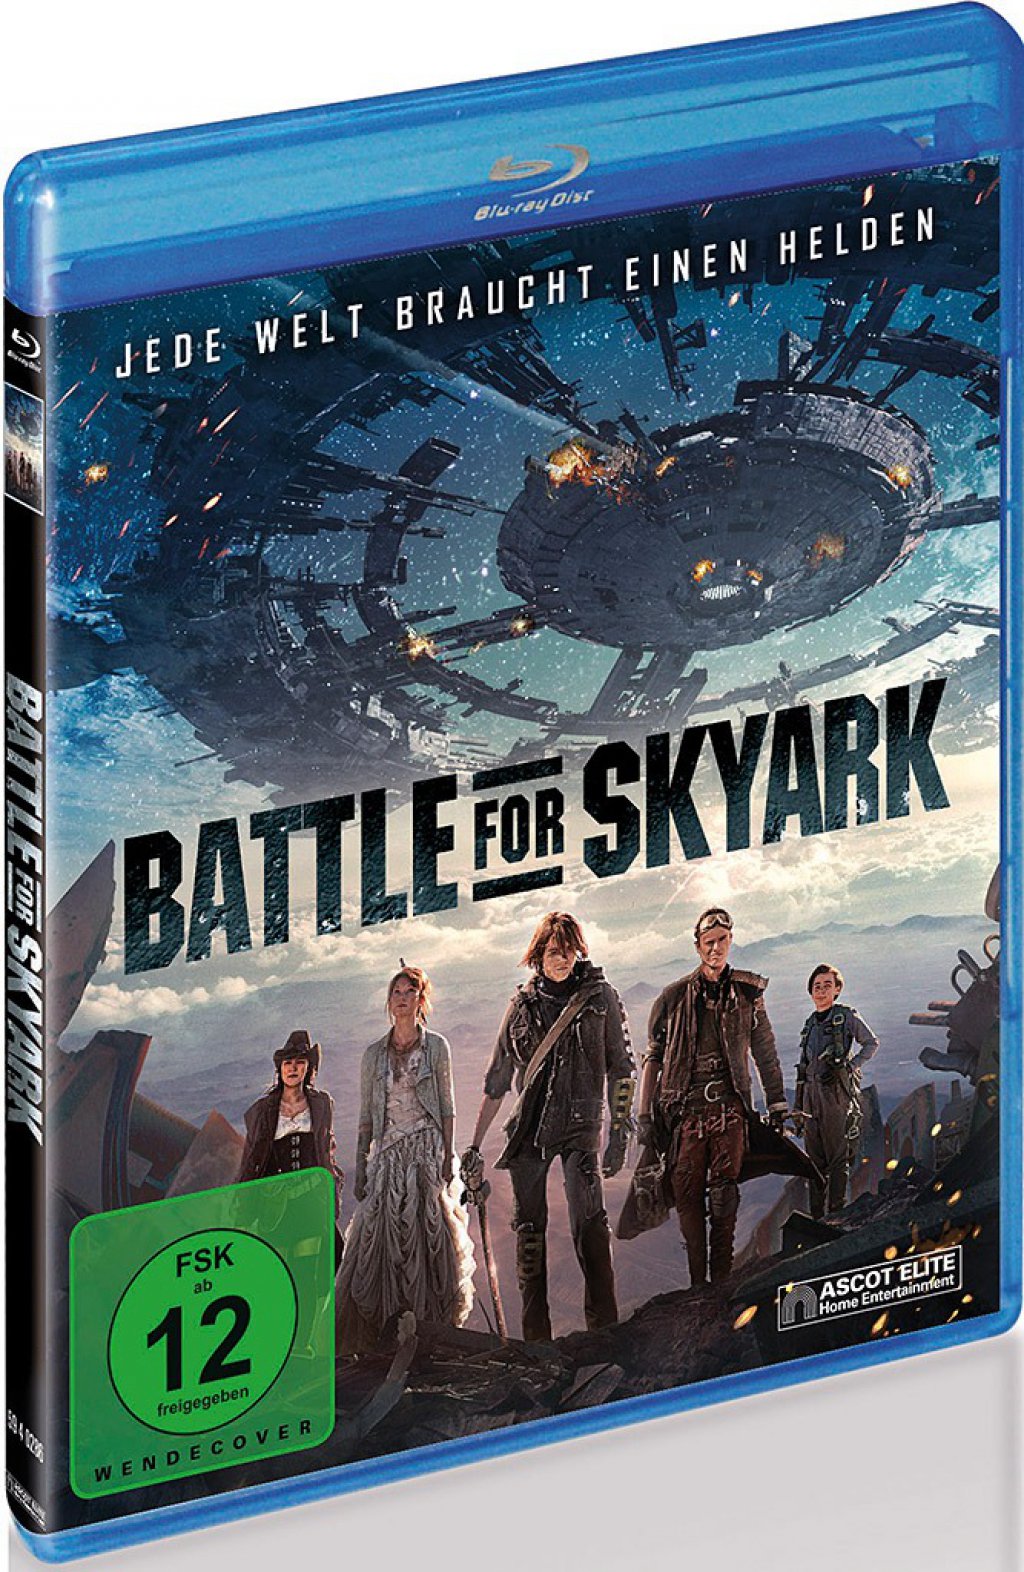 battle for skyark movieshare